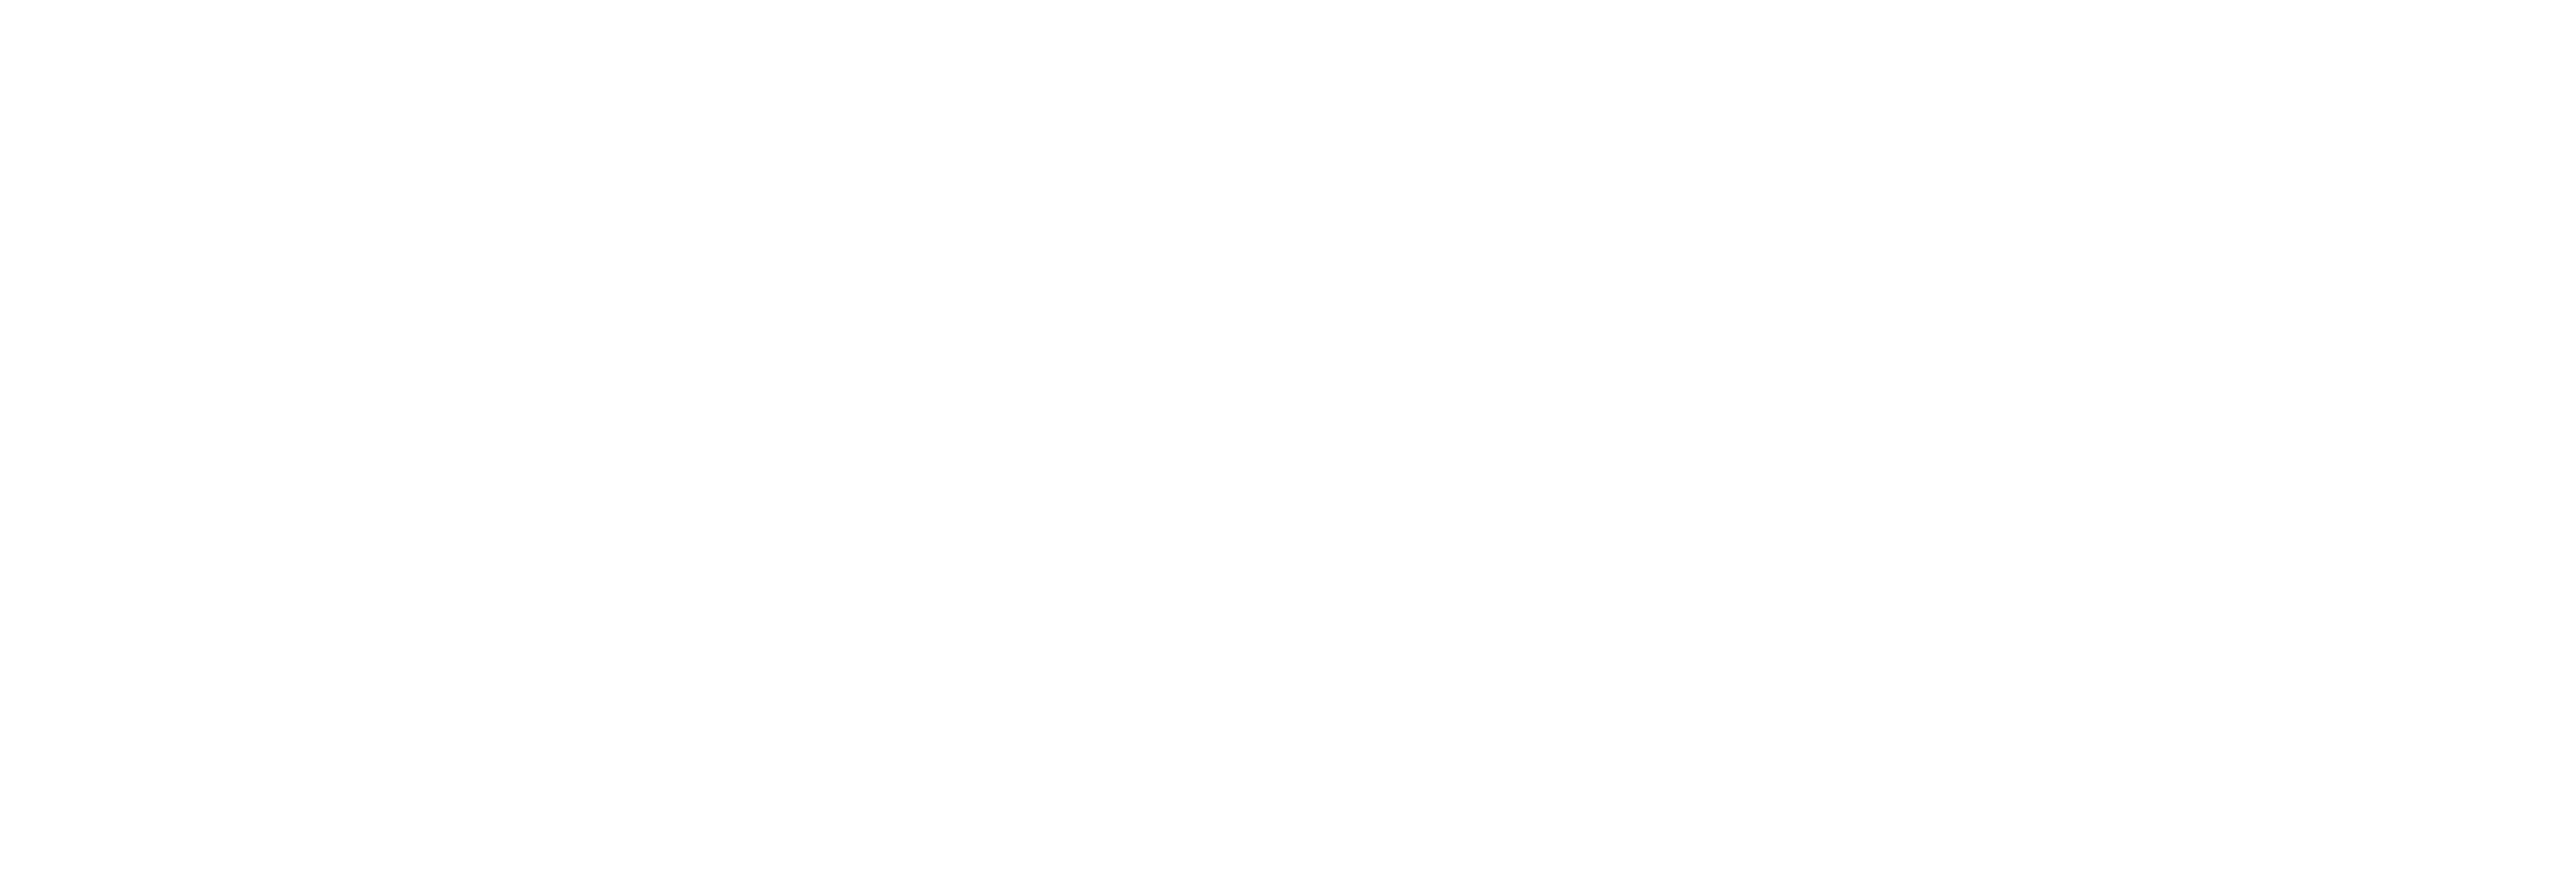 AniCura Lauro Centre Veterinari logo